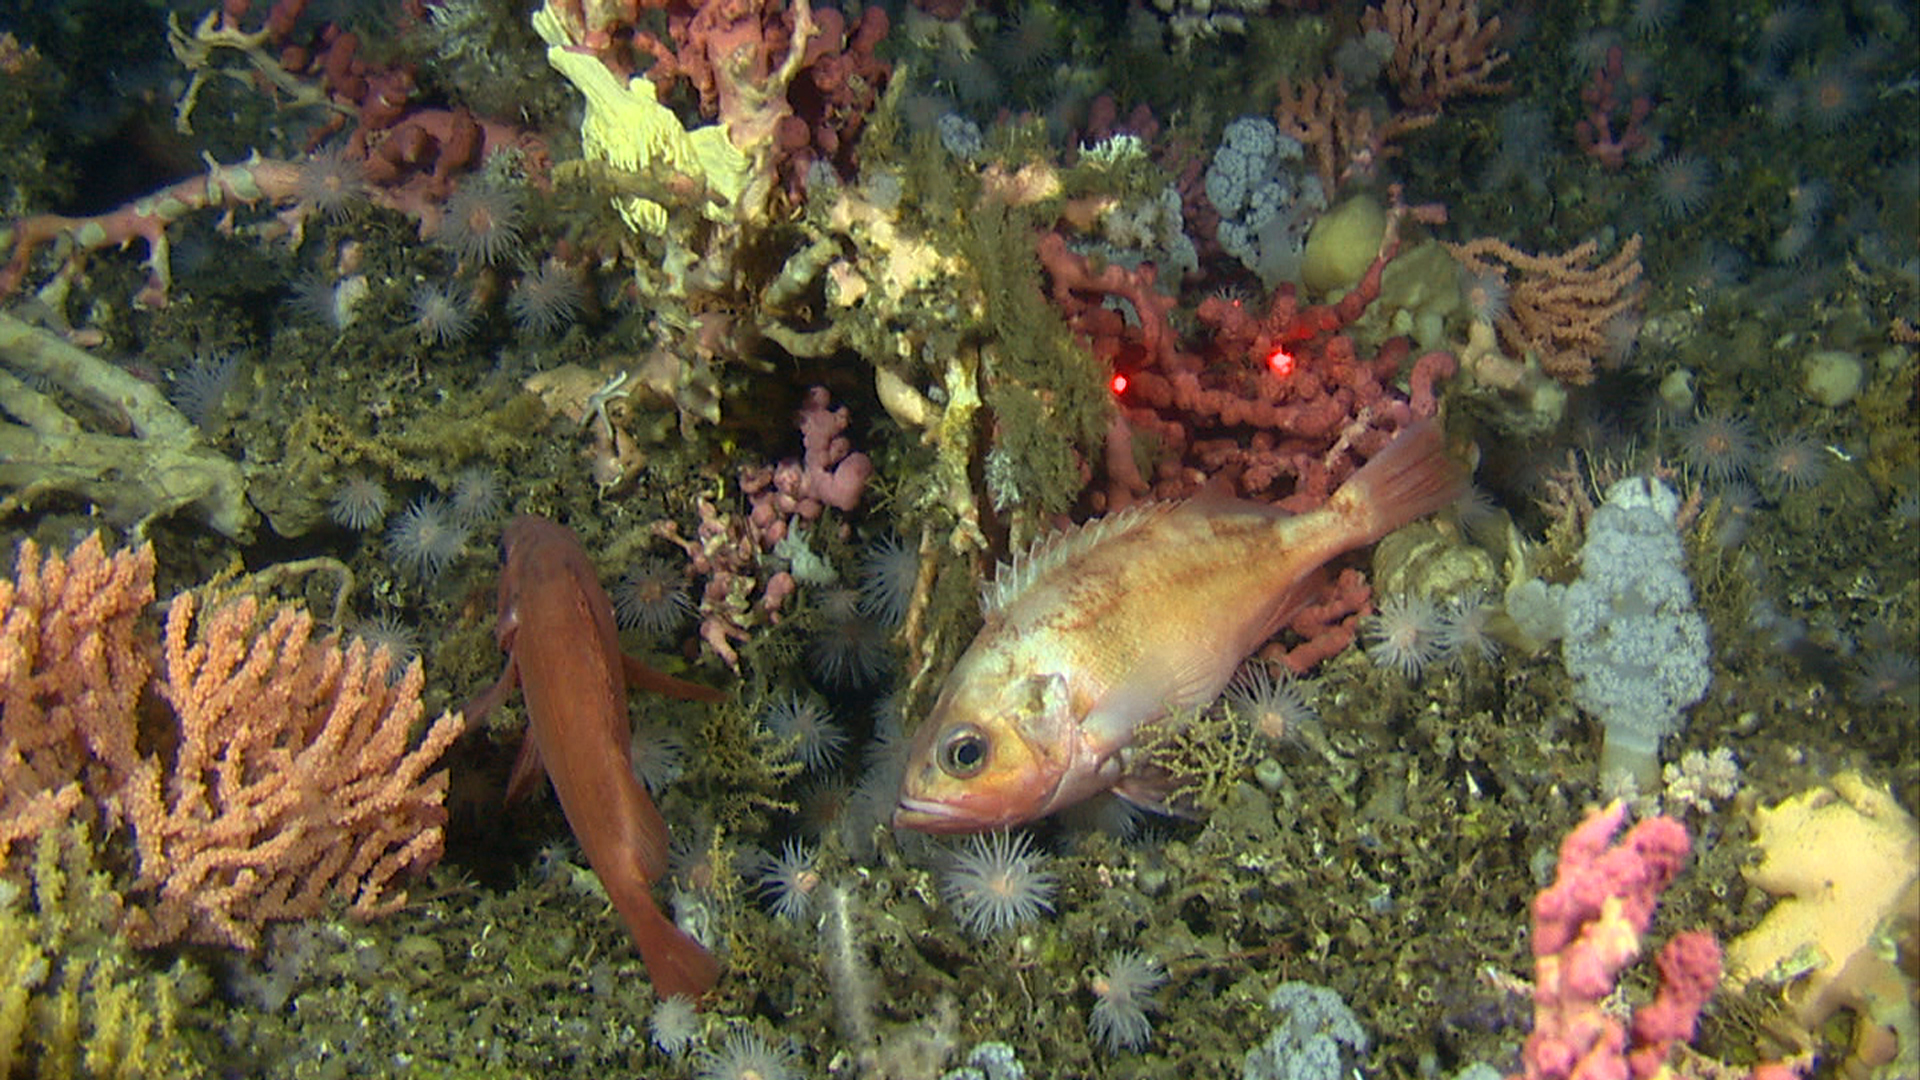 Bildet viser korallrev der det er mange ulike rødfarger, inkludert en rød fisk.